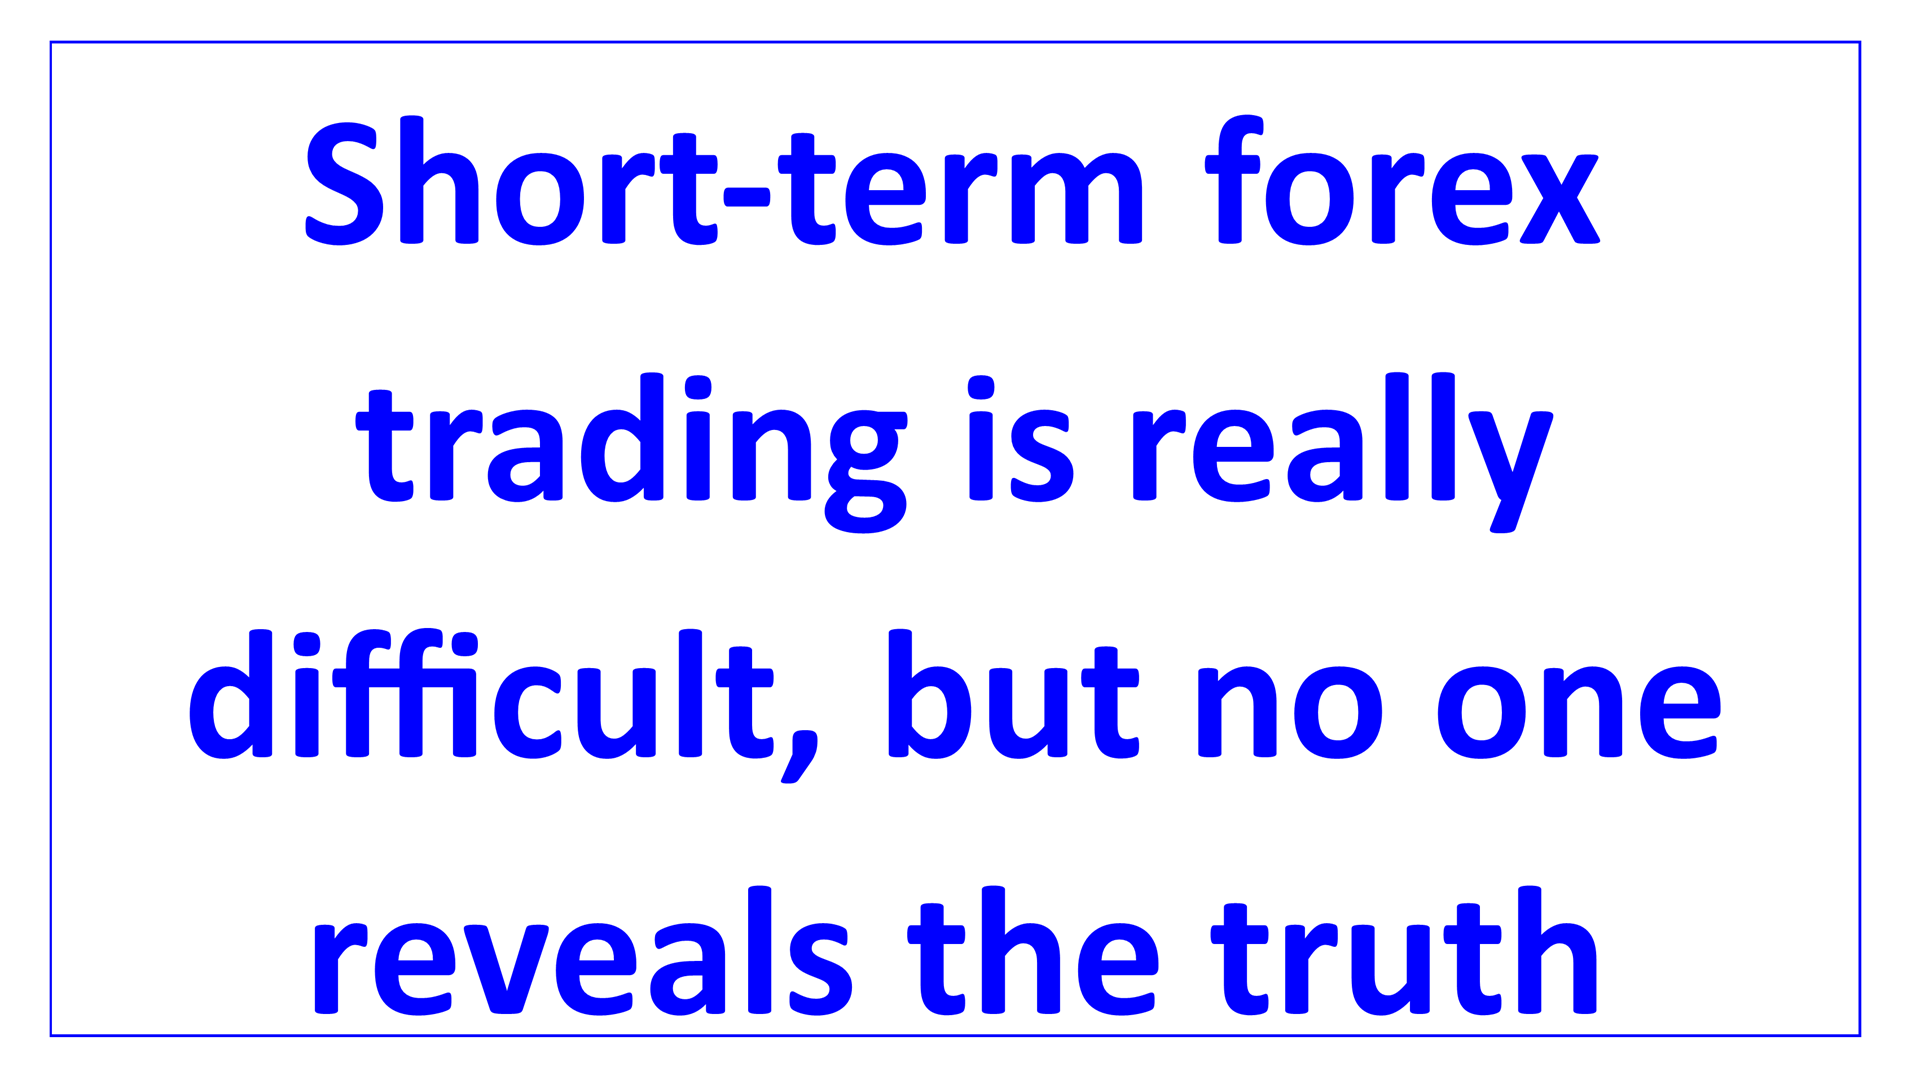 short-term forex trading difficult no reveals en